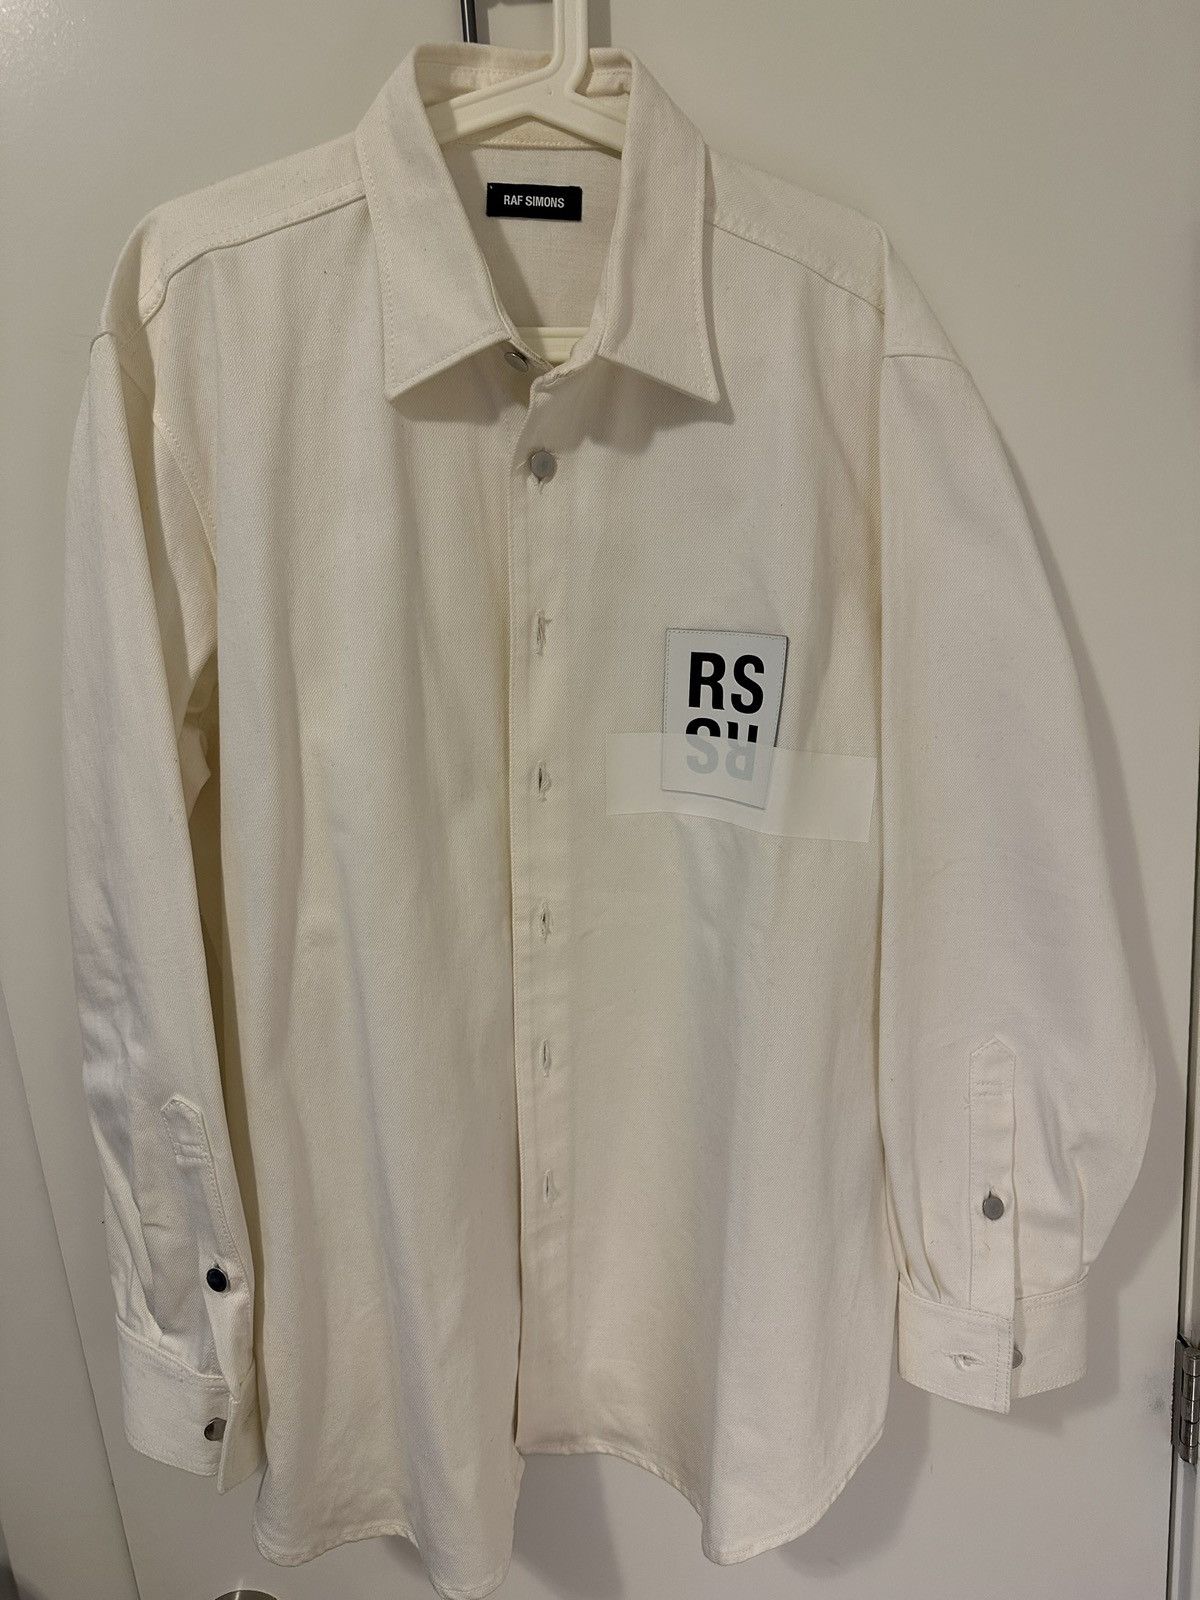 Raf Simons Raf Simons shirt jacket | Grailed